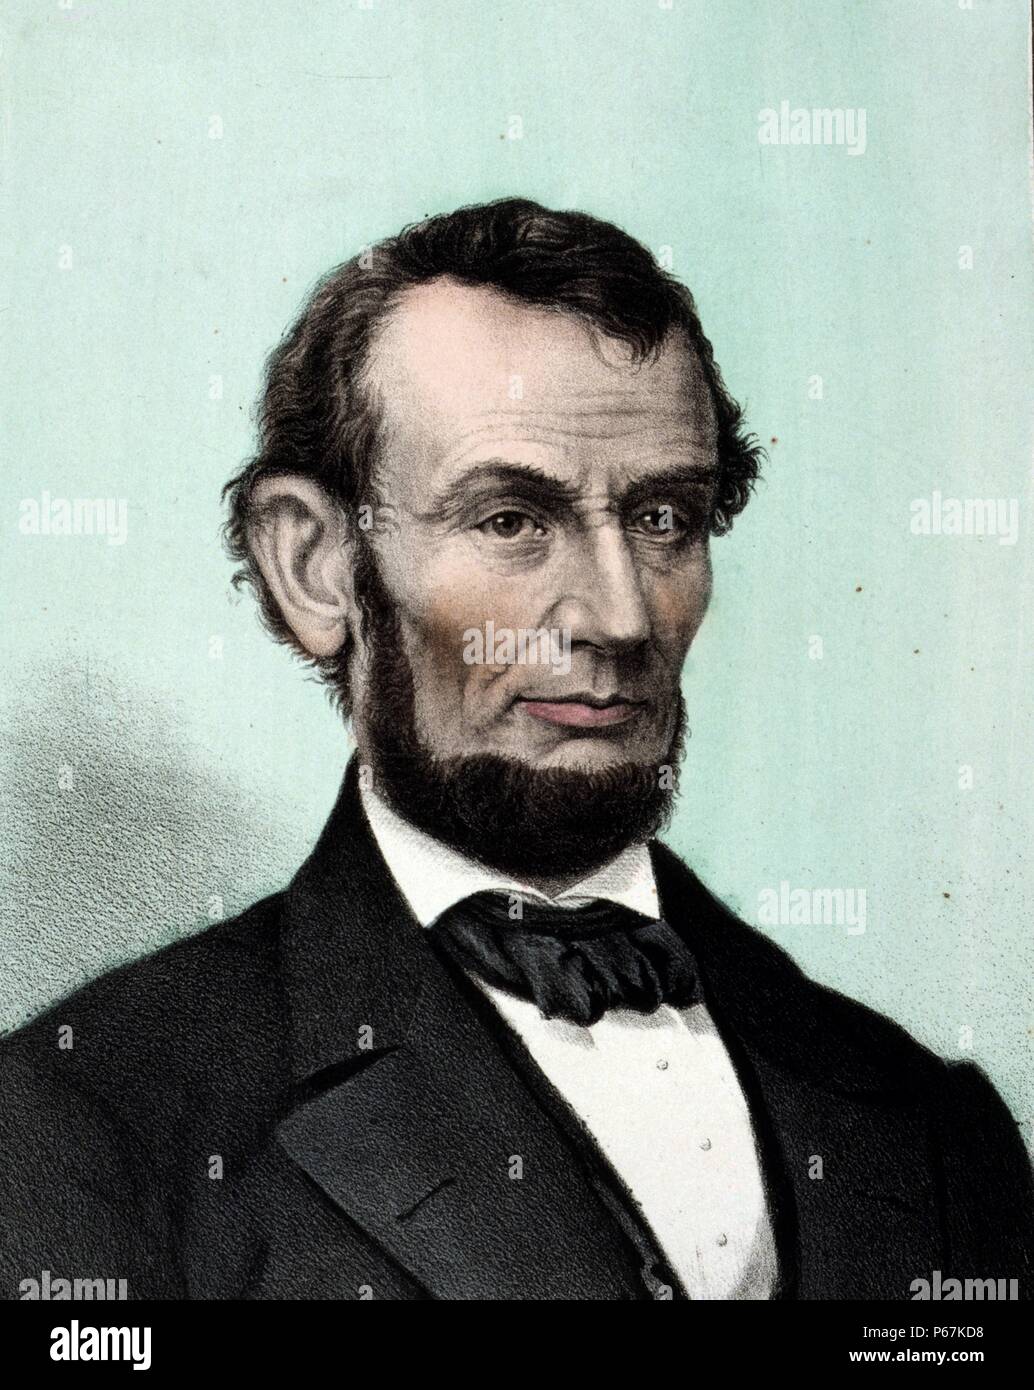 Abraham Lincoln. Lincoln fue el 16º presidente de los Estados Unidos, sirviendo desde marzo de 1861 hasta su asesinato en abril de 1865. Él condujo a los Estados Unidos a través de su guerra civil y abolió la esclavitud y la modernización de la economía en el proceso. Foto de stock